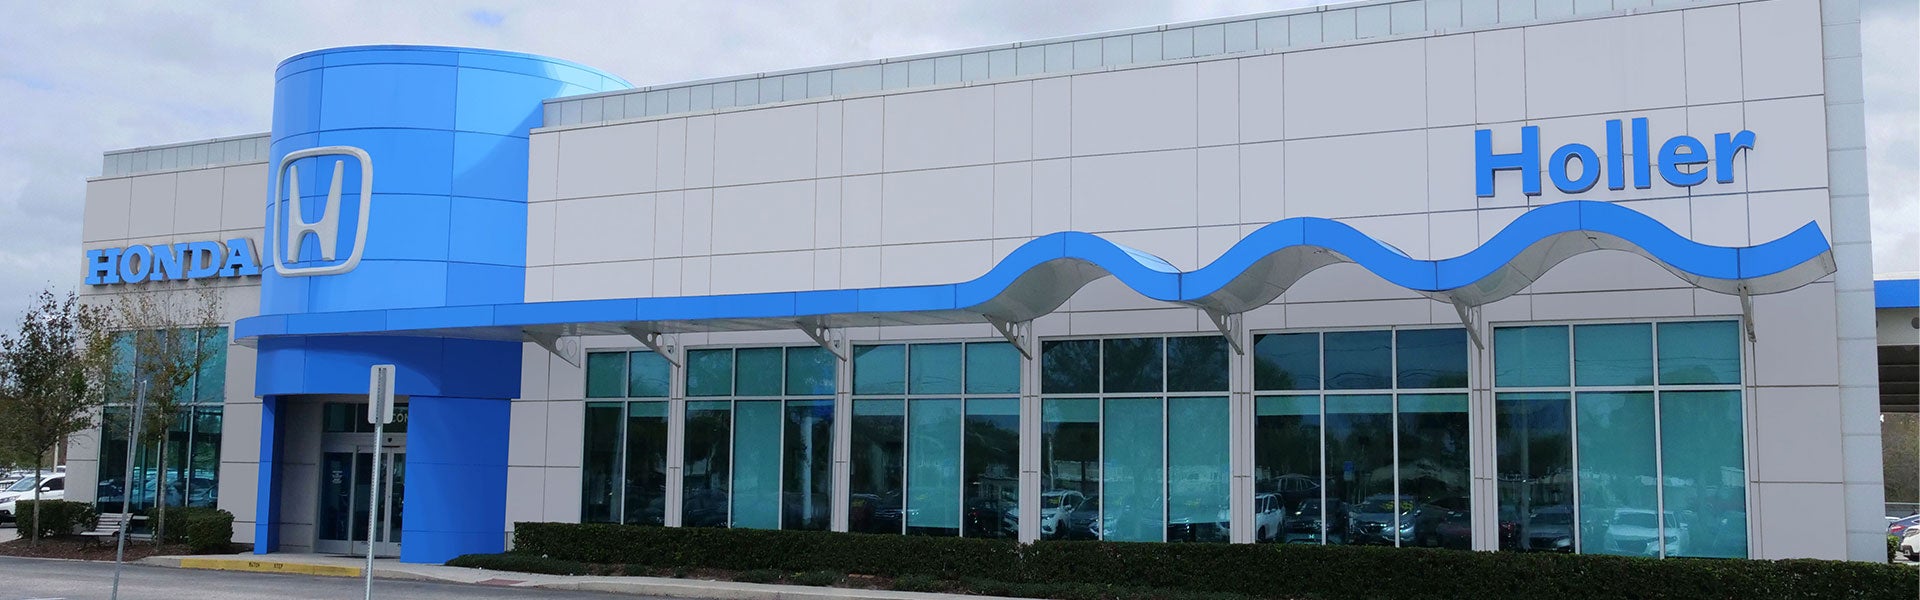 Holler Honda Dealership In Orlando, Fl